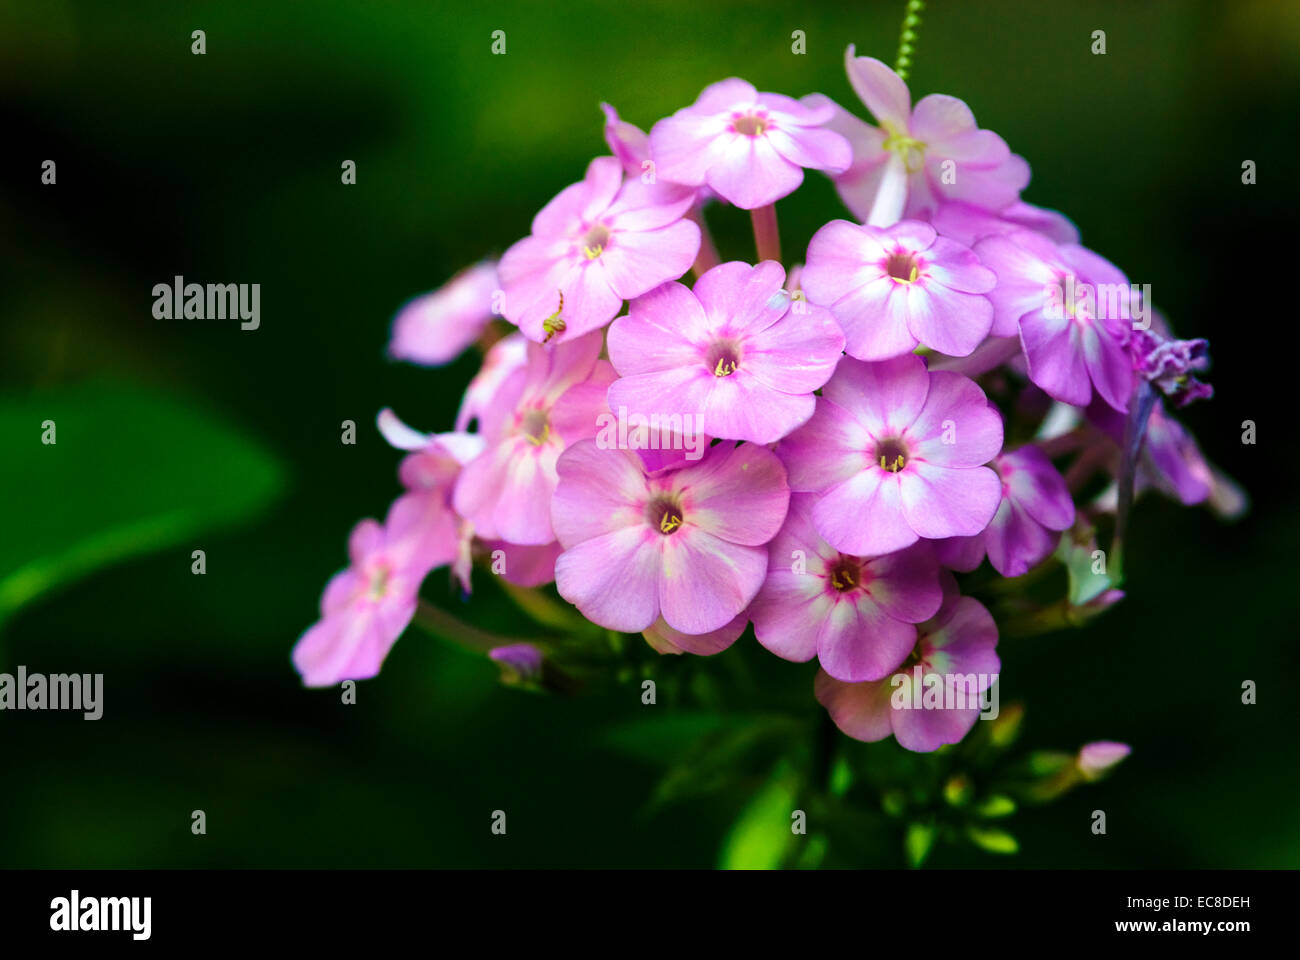 Garden Phlox, macro, select focus photo. Stock Photo